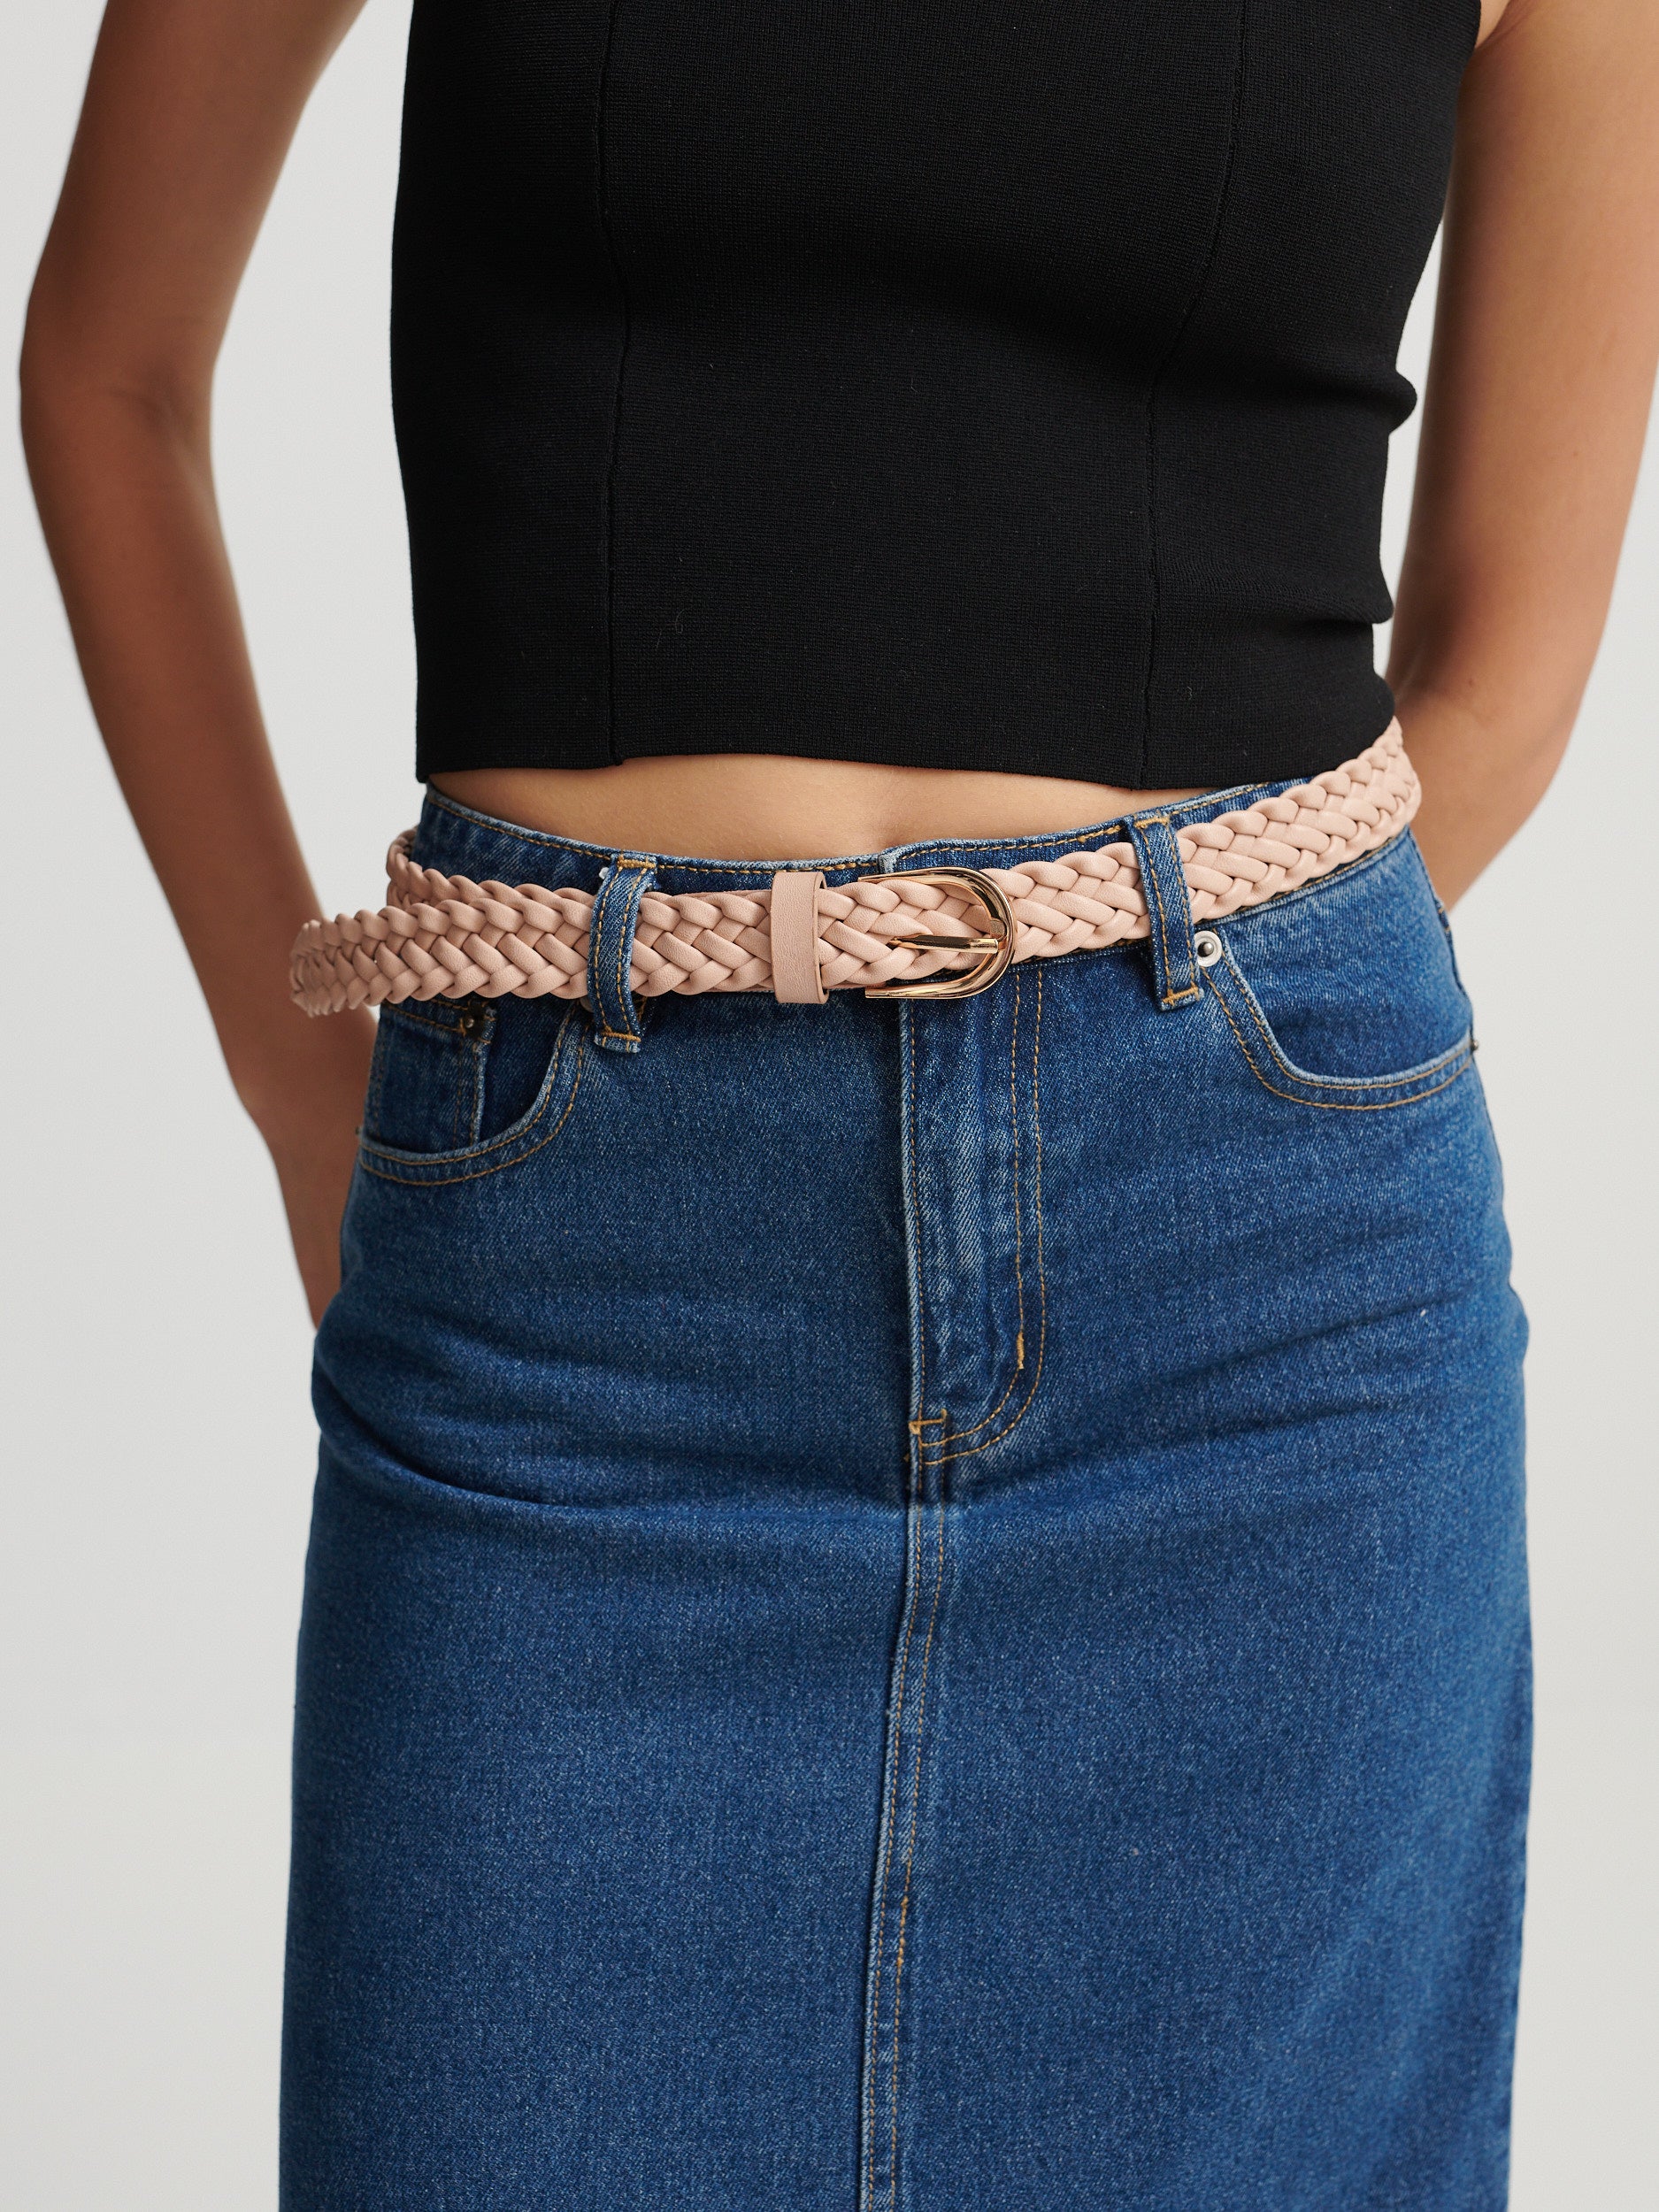 [New Colour] Rosamonde Braided Summer Belt